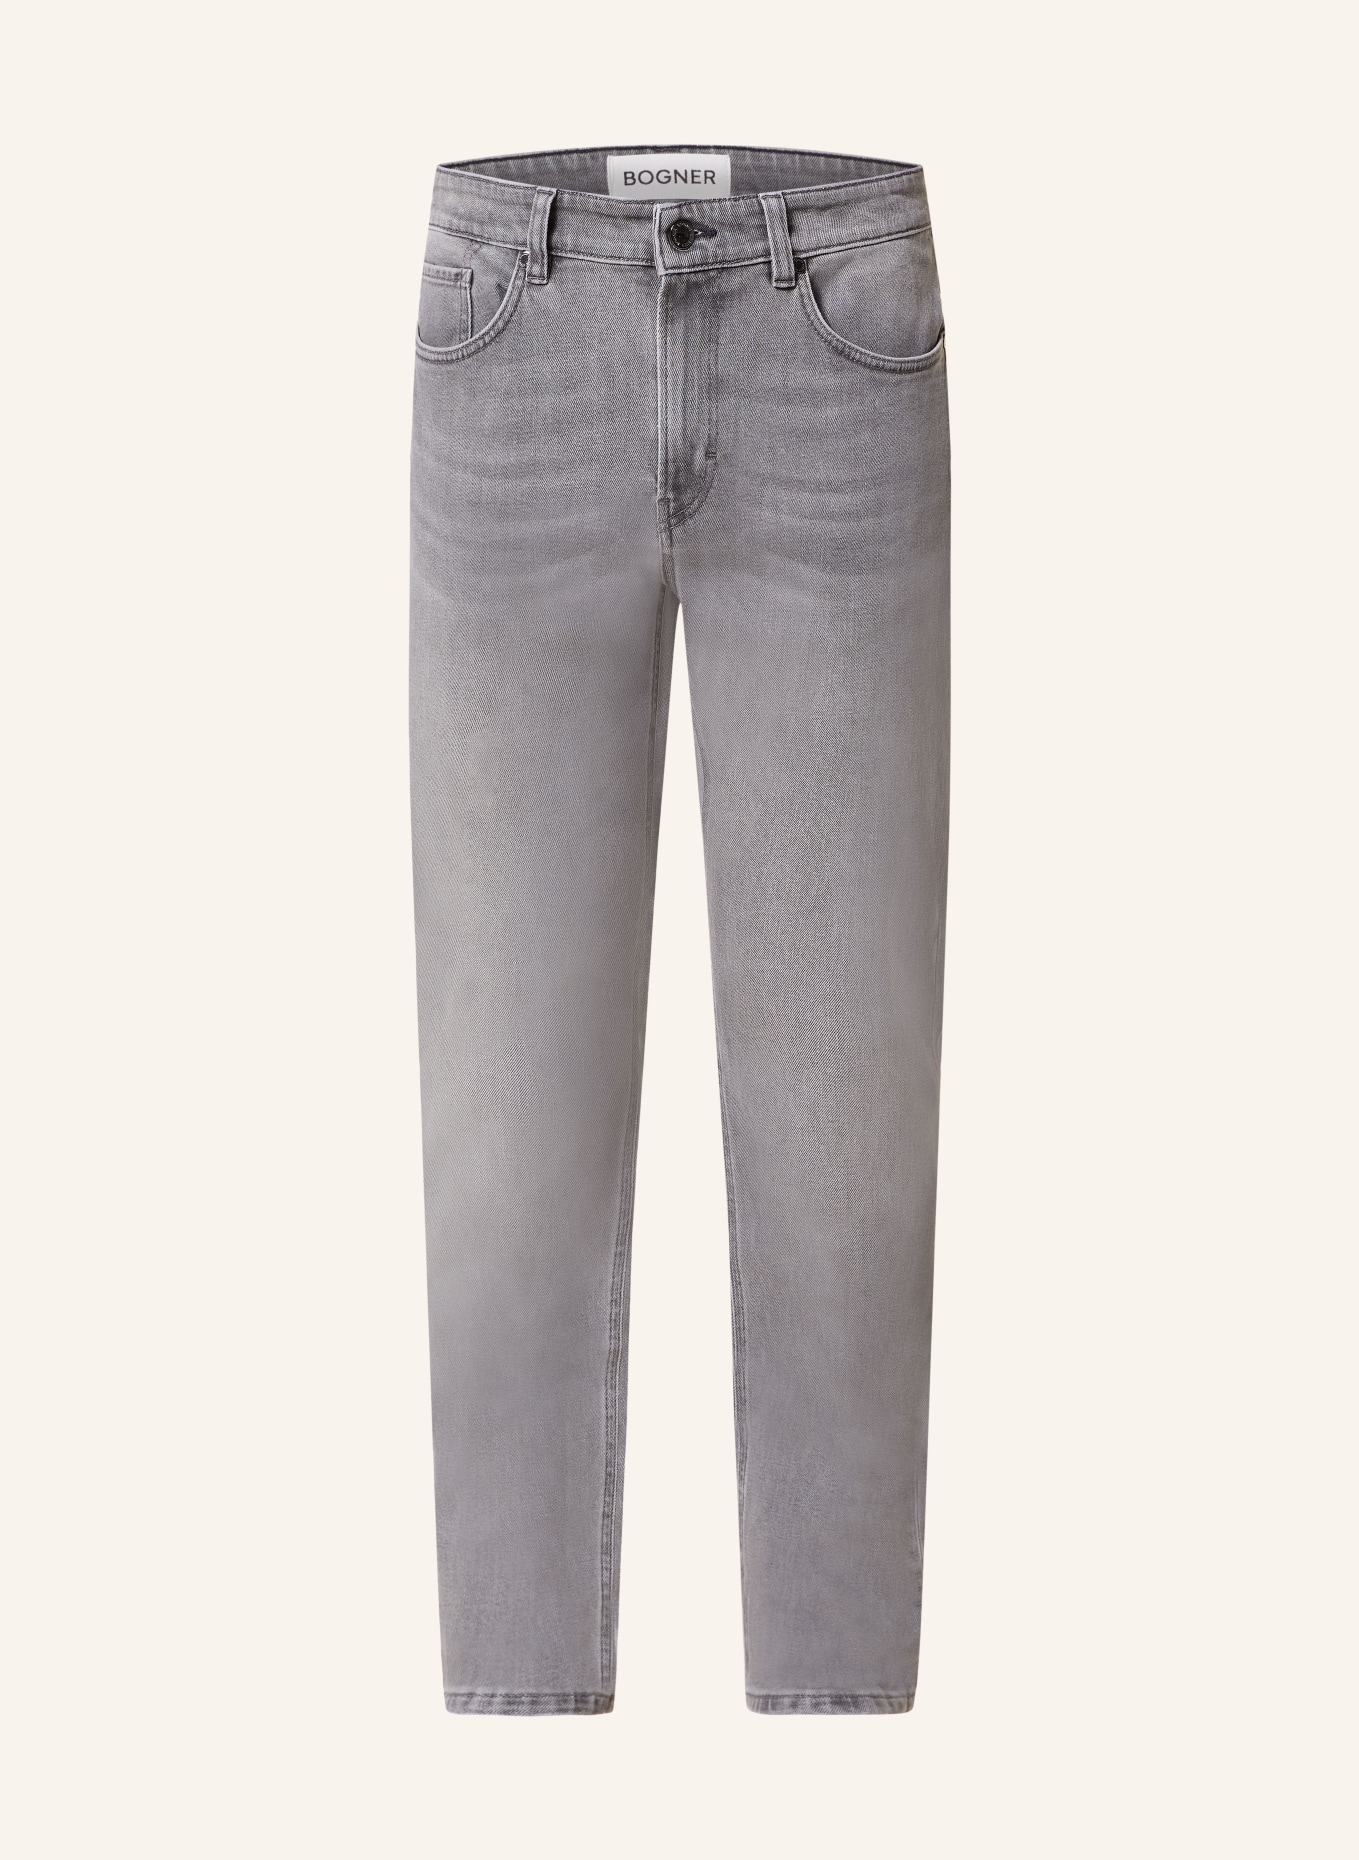 BOGNER Jeans ROB-G Prime Fit, Farbe: 021 anthra melange (Bild 1)